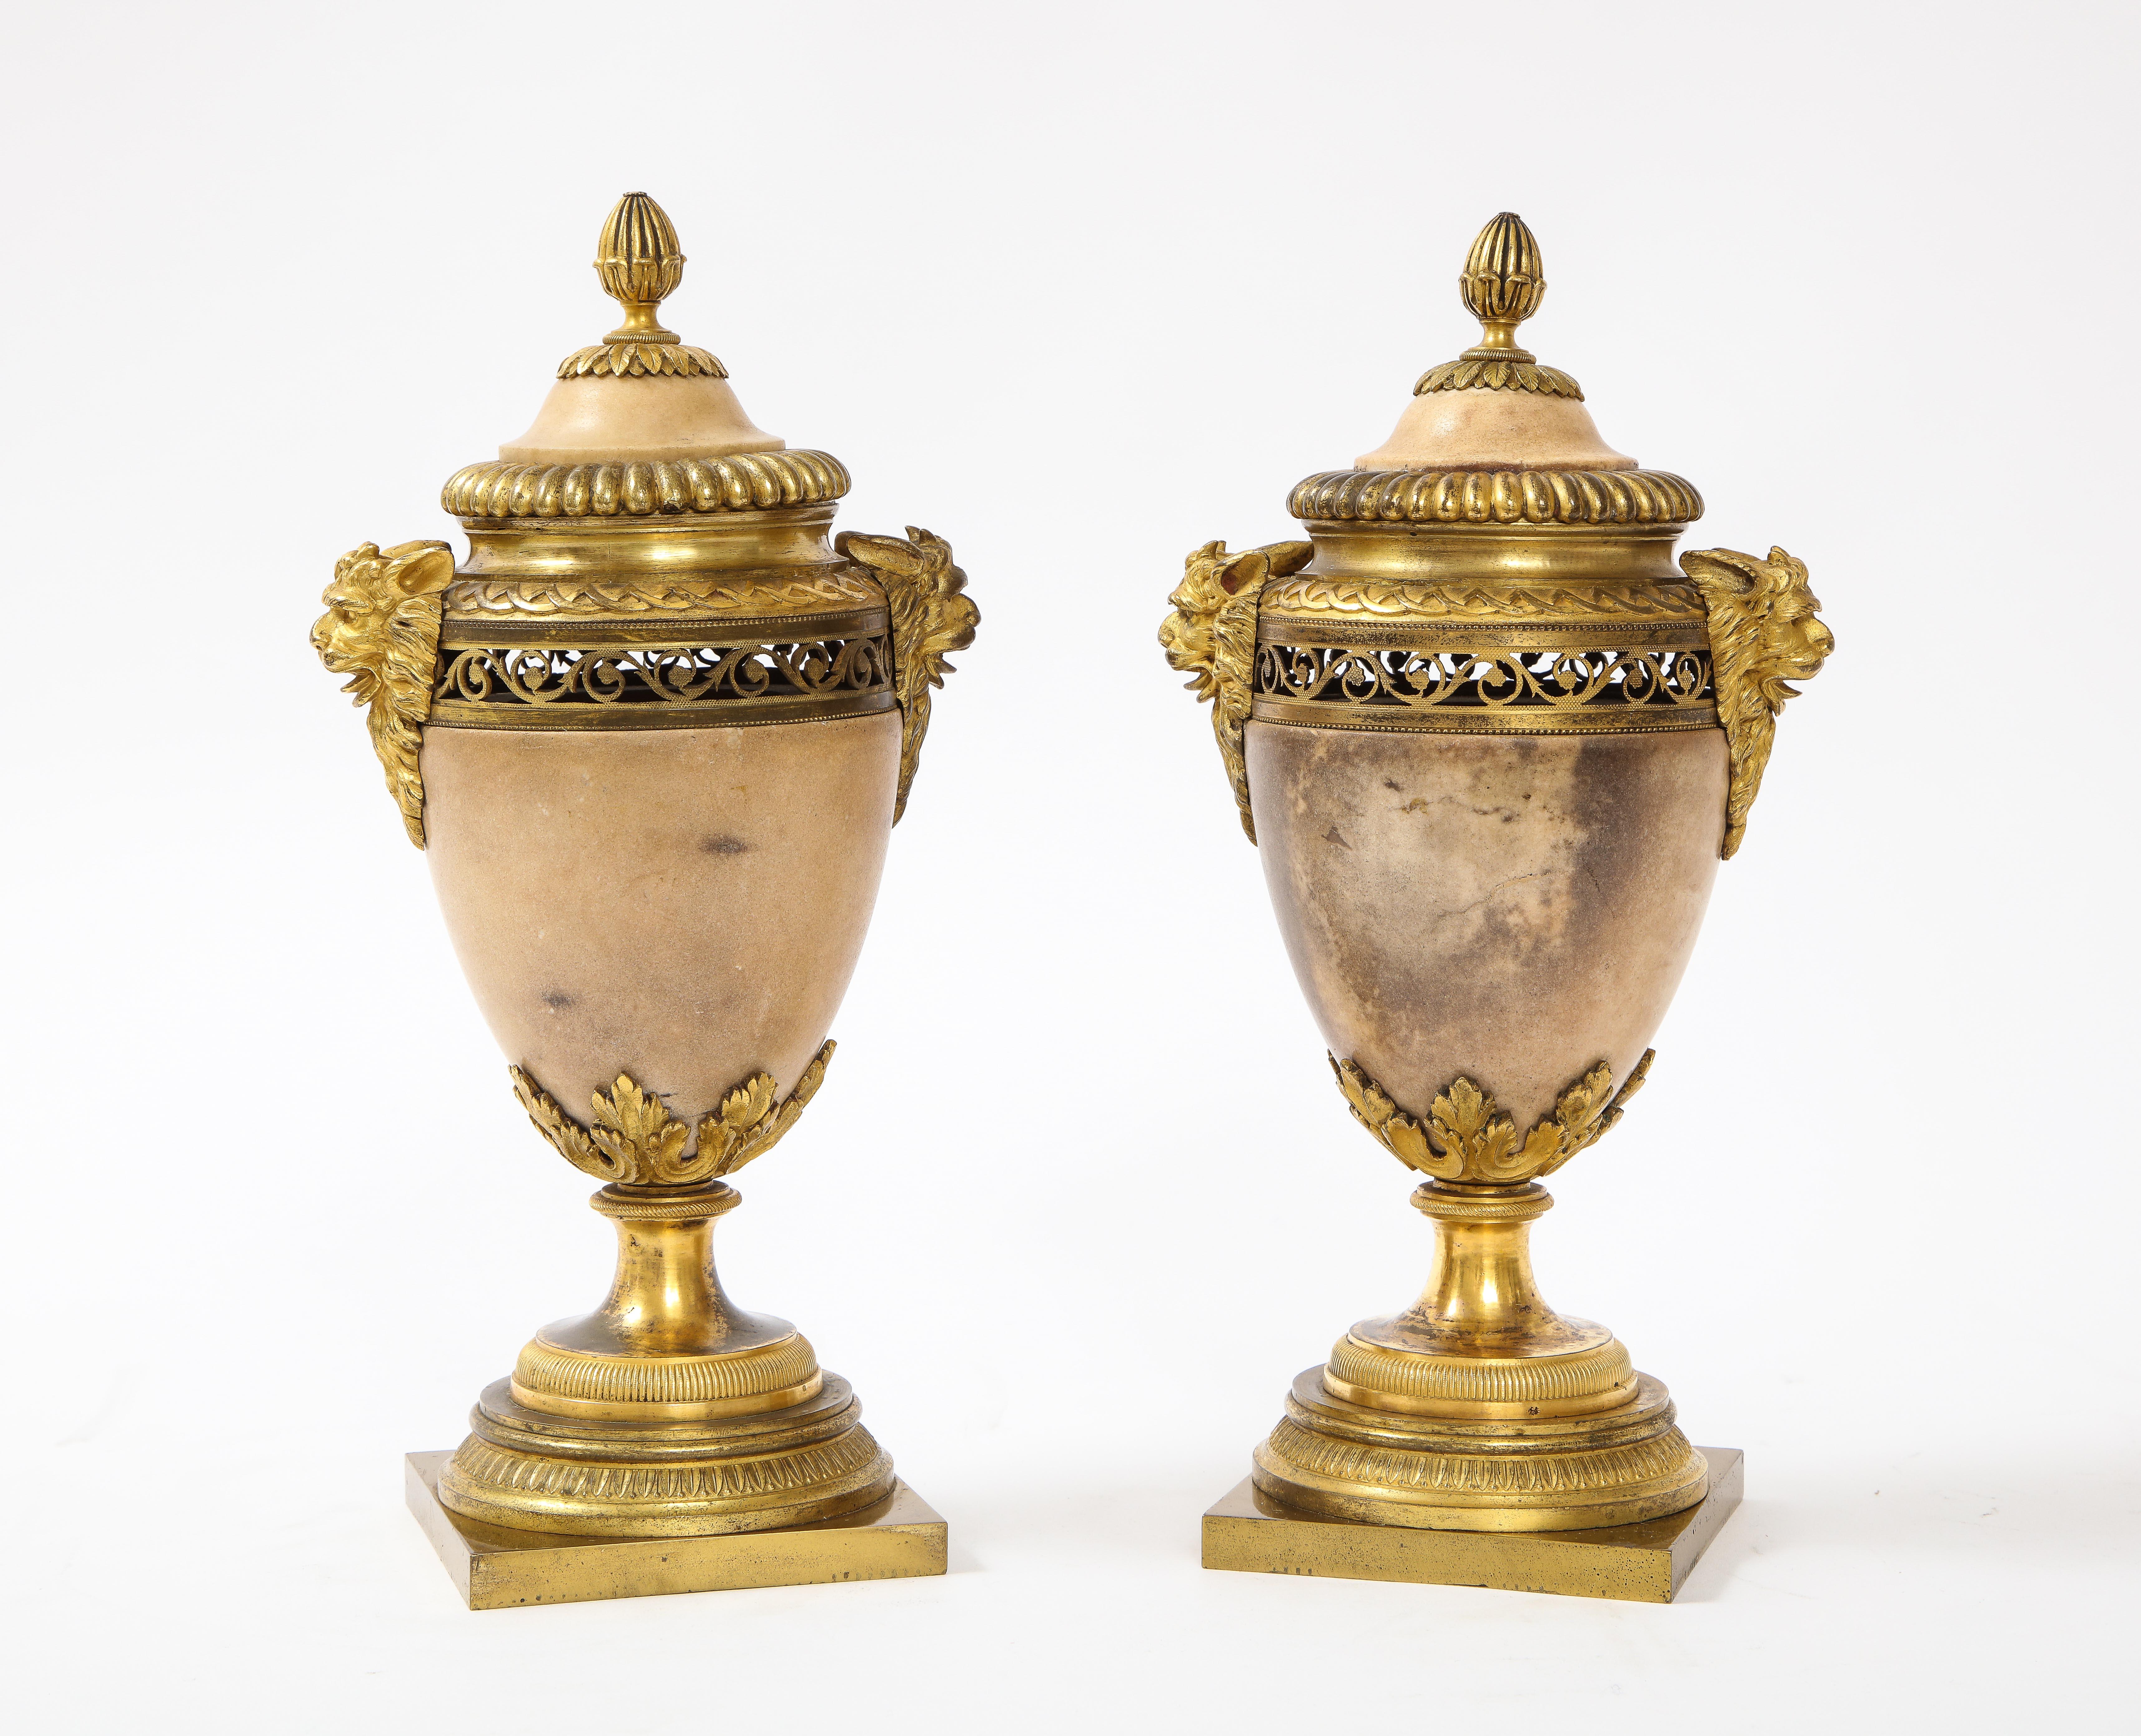 Ein fabelhaftes Paar Louis XVI nordeuropäischer neoklassizistischer Marmor-Potpourris mit Ormolu-Montage. Der Korpus ist aus einem hochwertigen pfirsichfarbenen Marmor handgeschnitzt. Jede Seite ist mit außergewöhnlich gegossenen, handziselierten